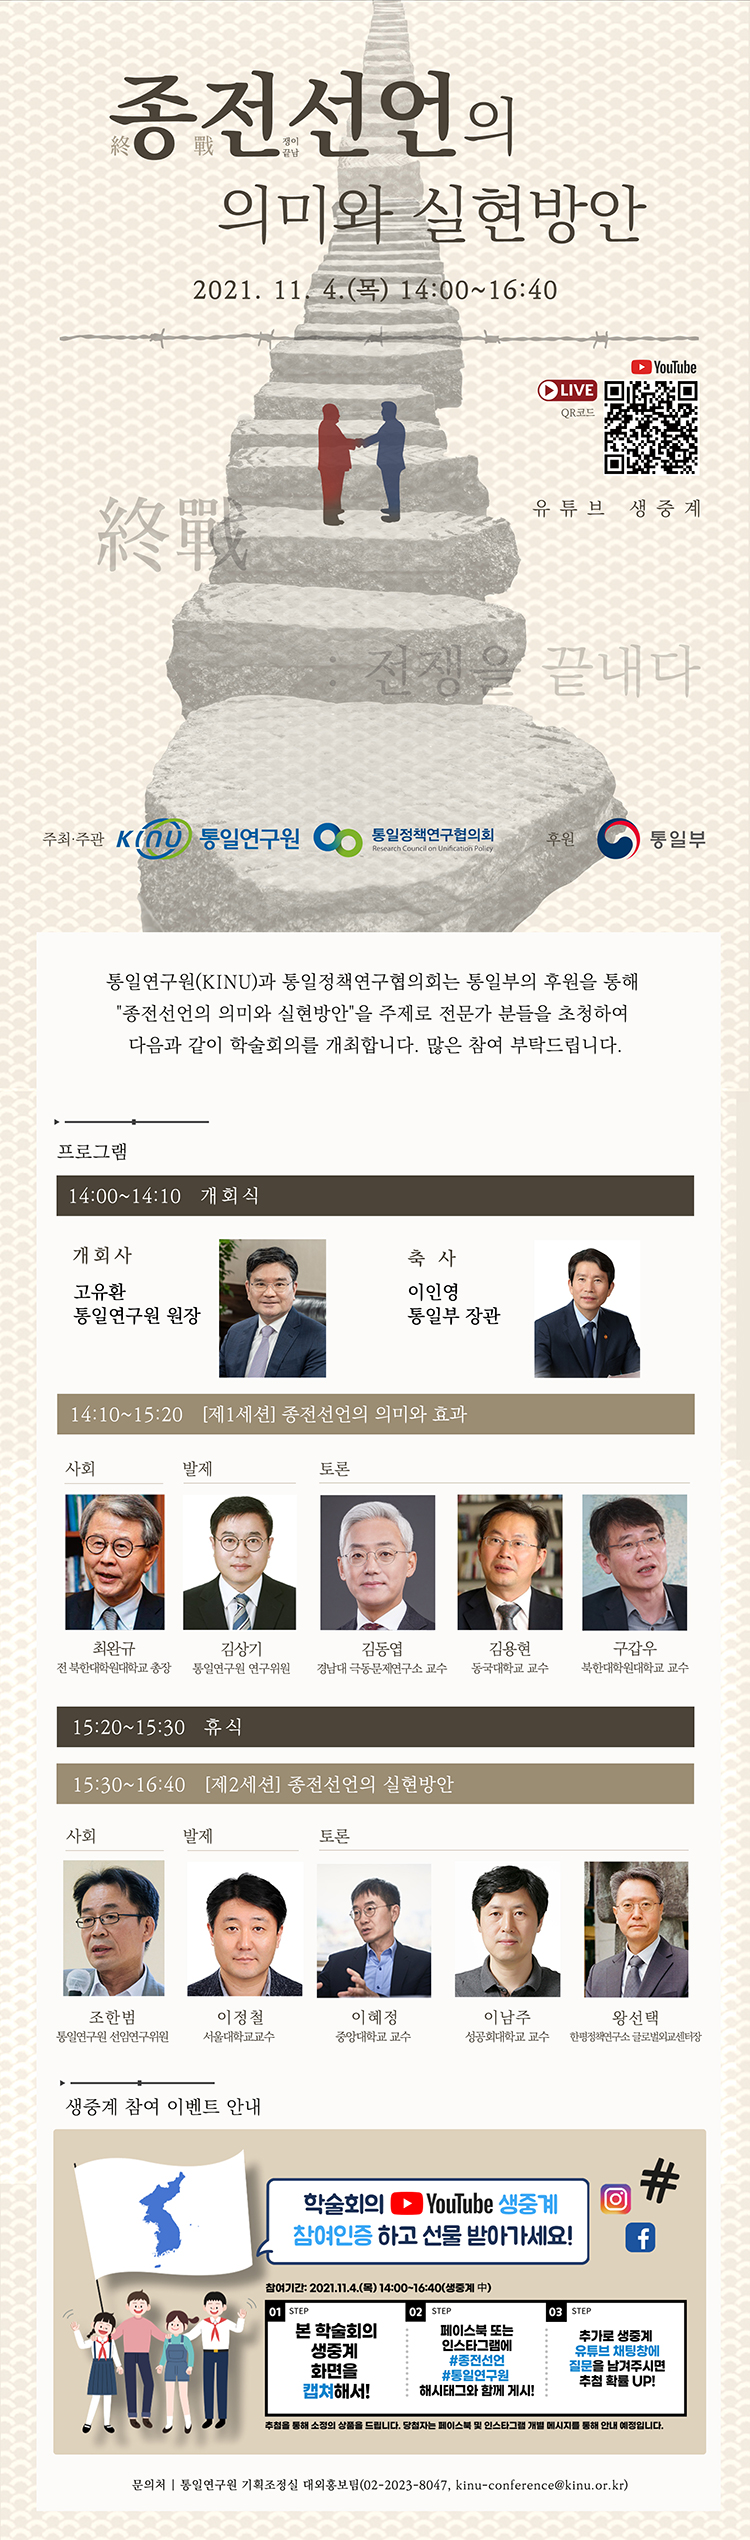 「종전선언의 의미와 실현방안」 학술회의 개최